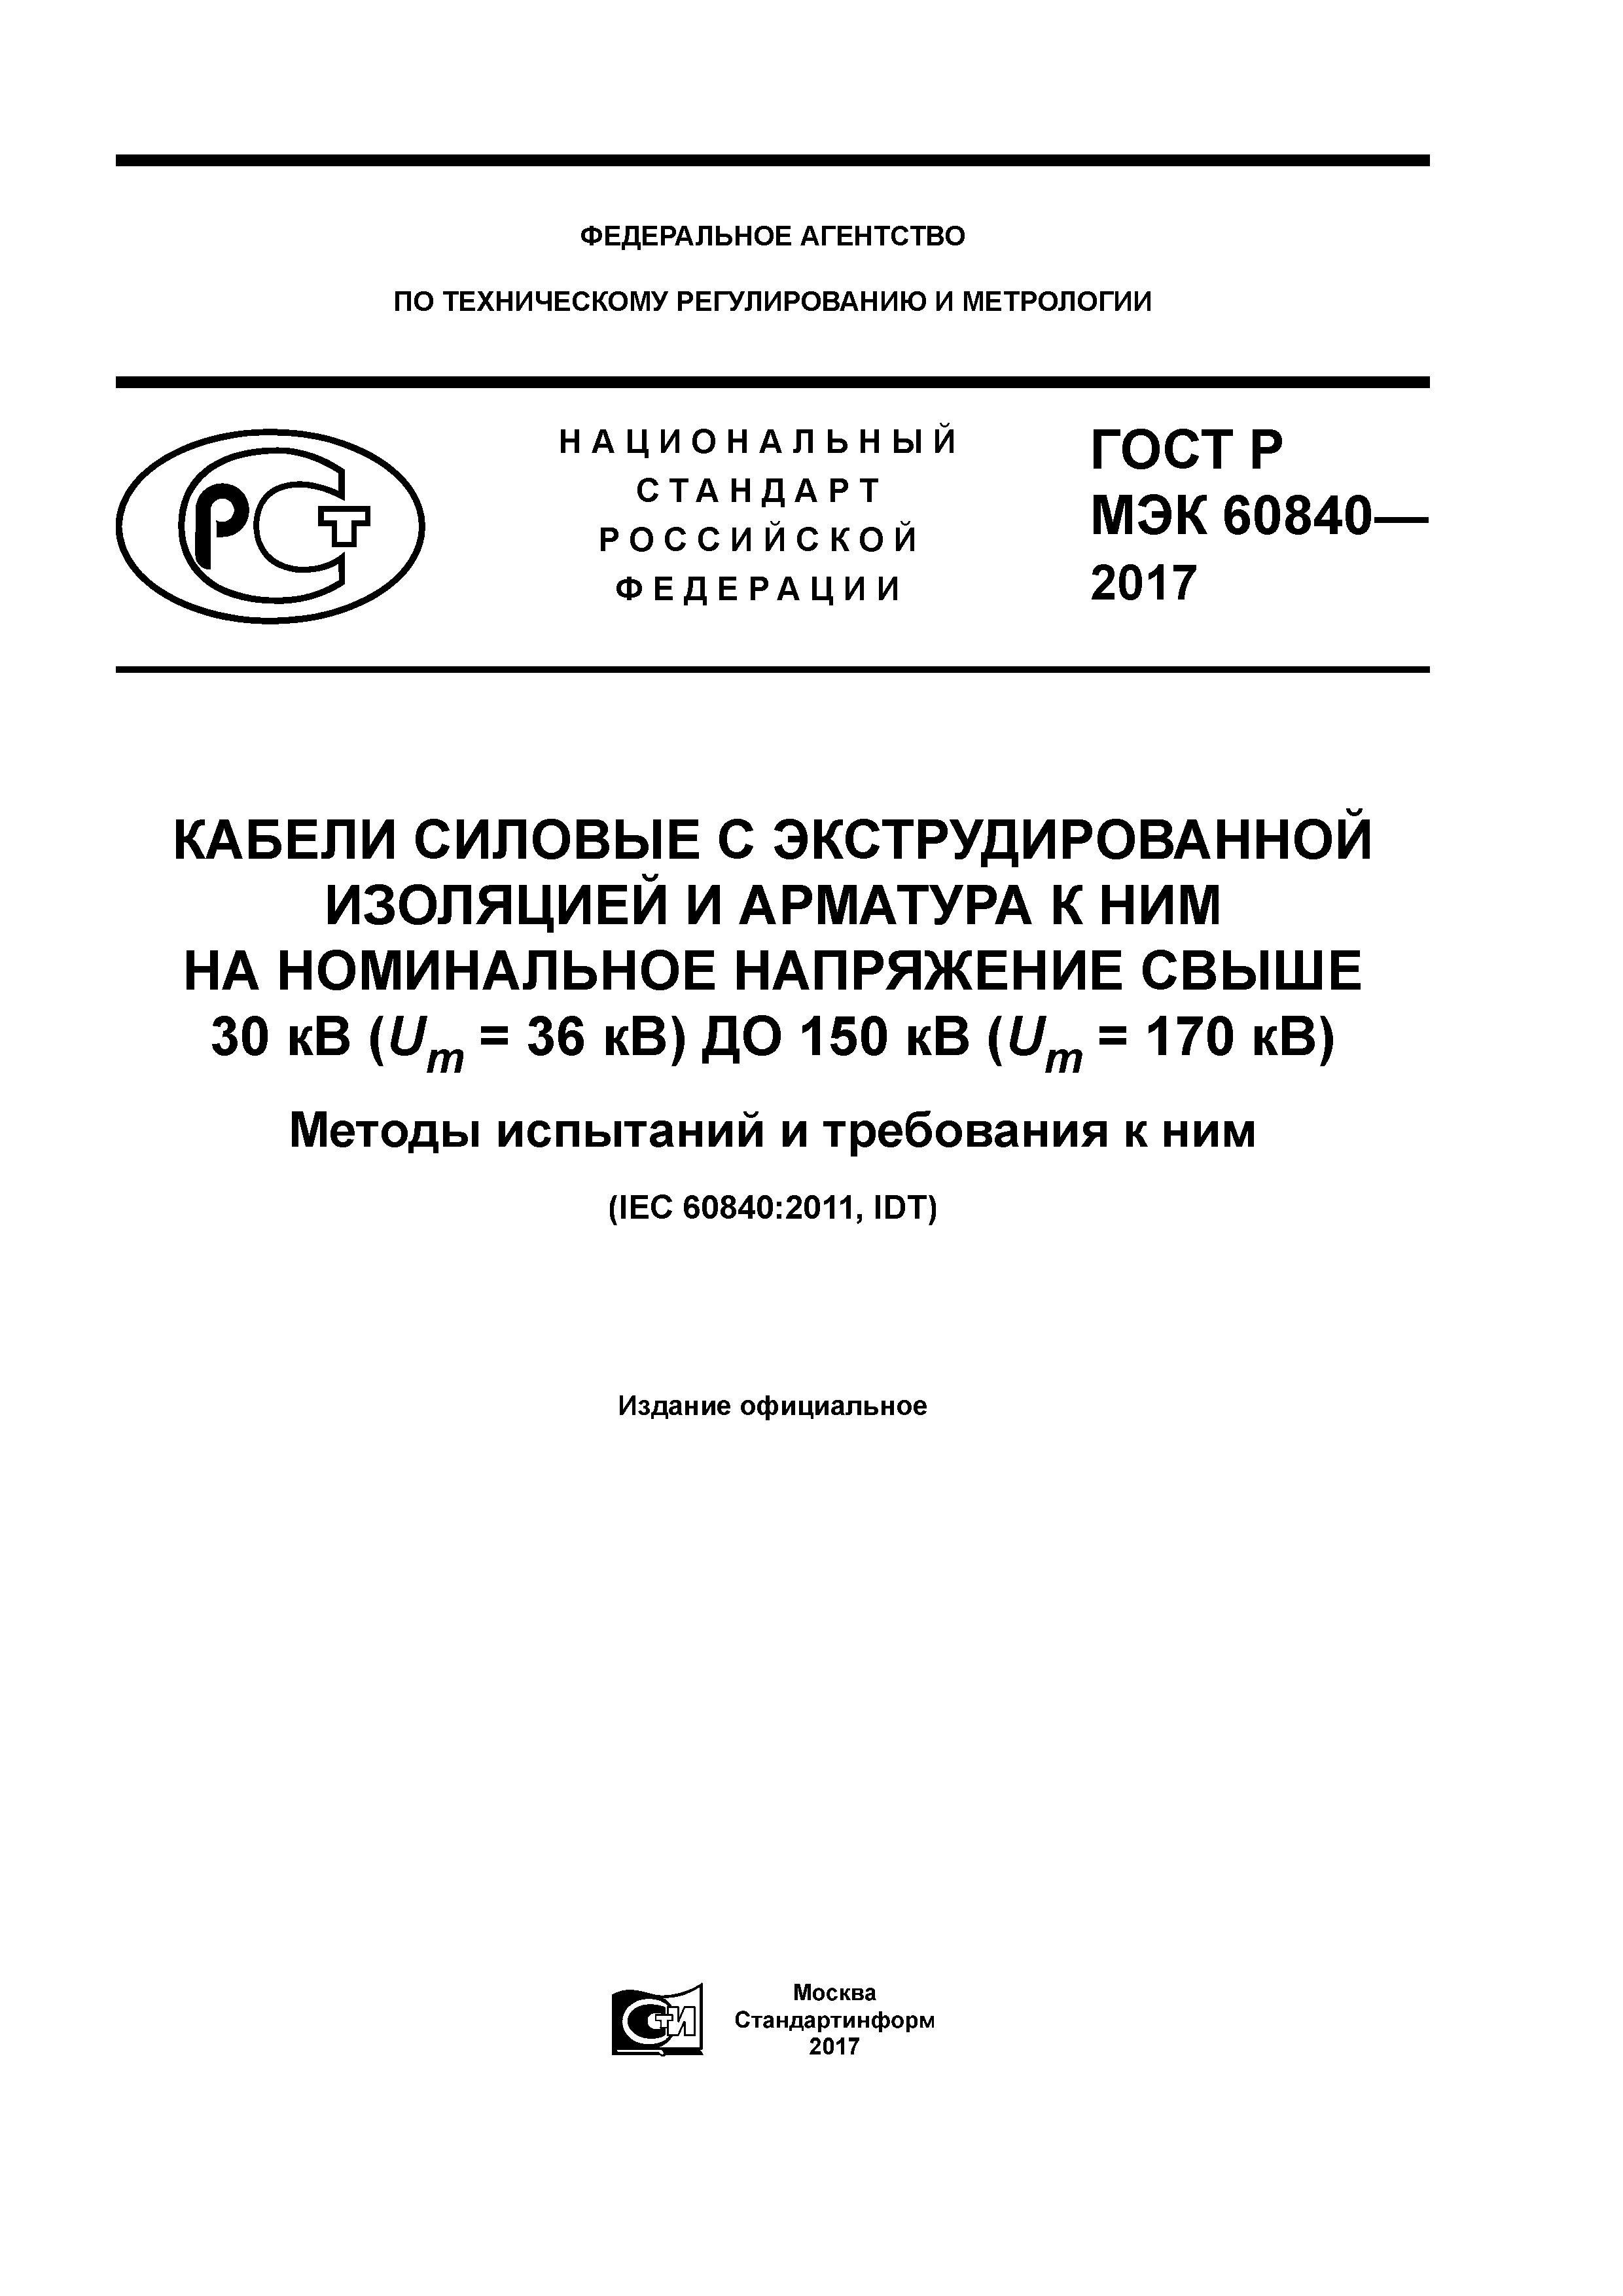 ГОСТ Р МЭК 60840-2017